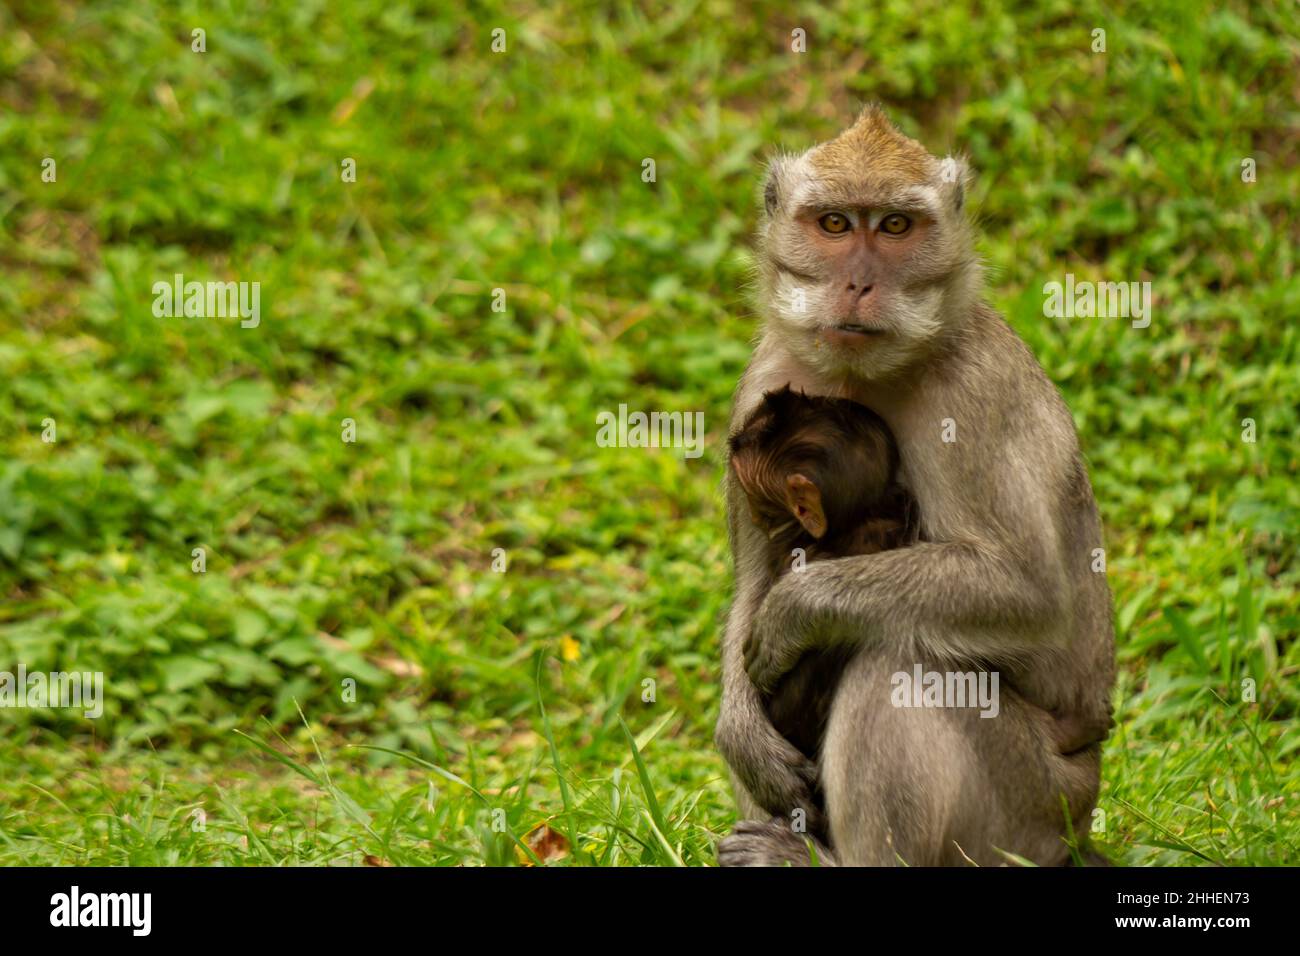 Una scimmia sta cercando cibo mentre tiene il suo bambino che non ha osato scendere dalle braccia della madre. Concetto di conservazione e fauna selvatica Foto Stock